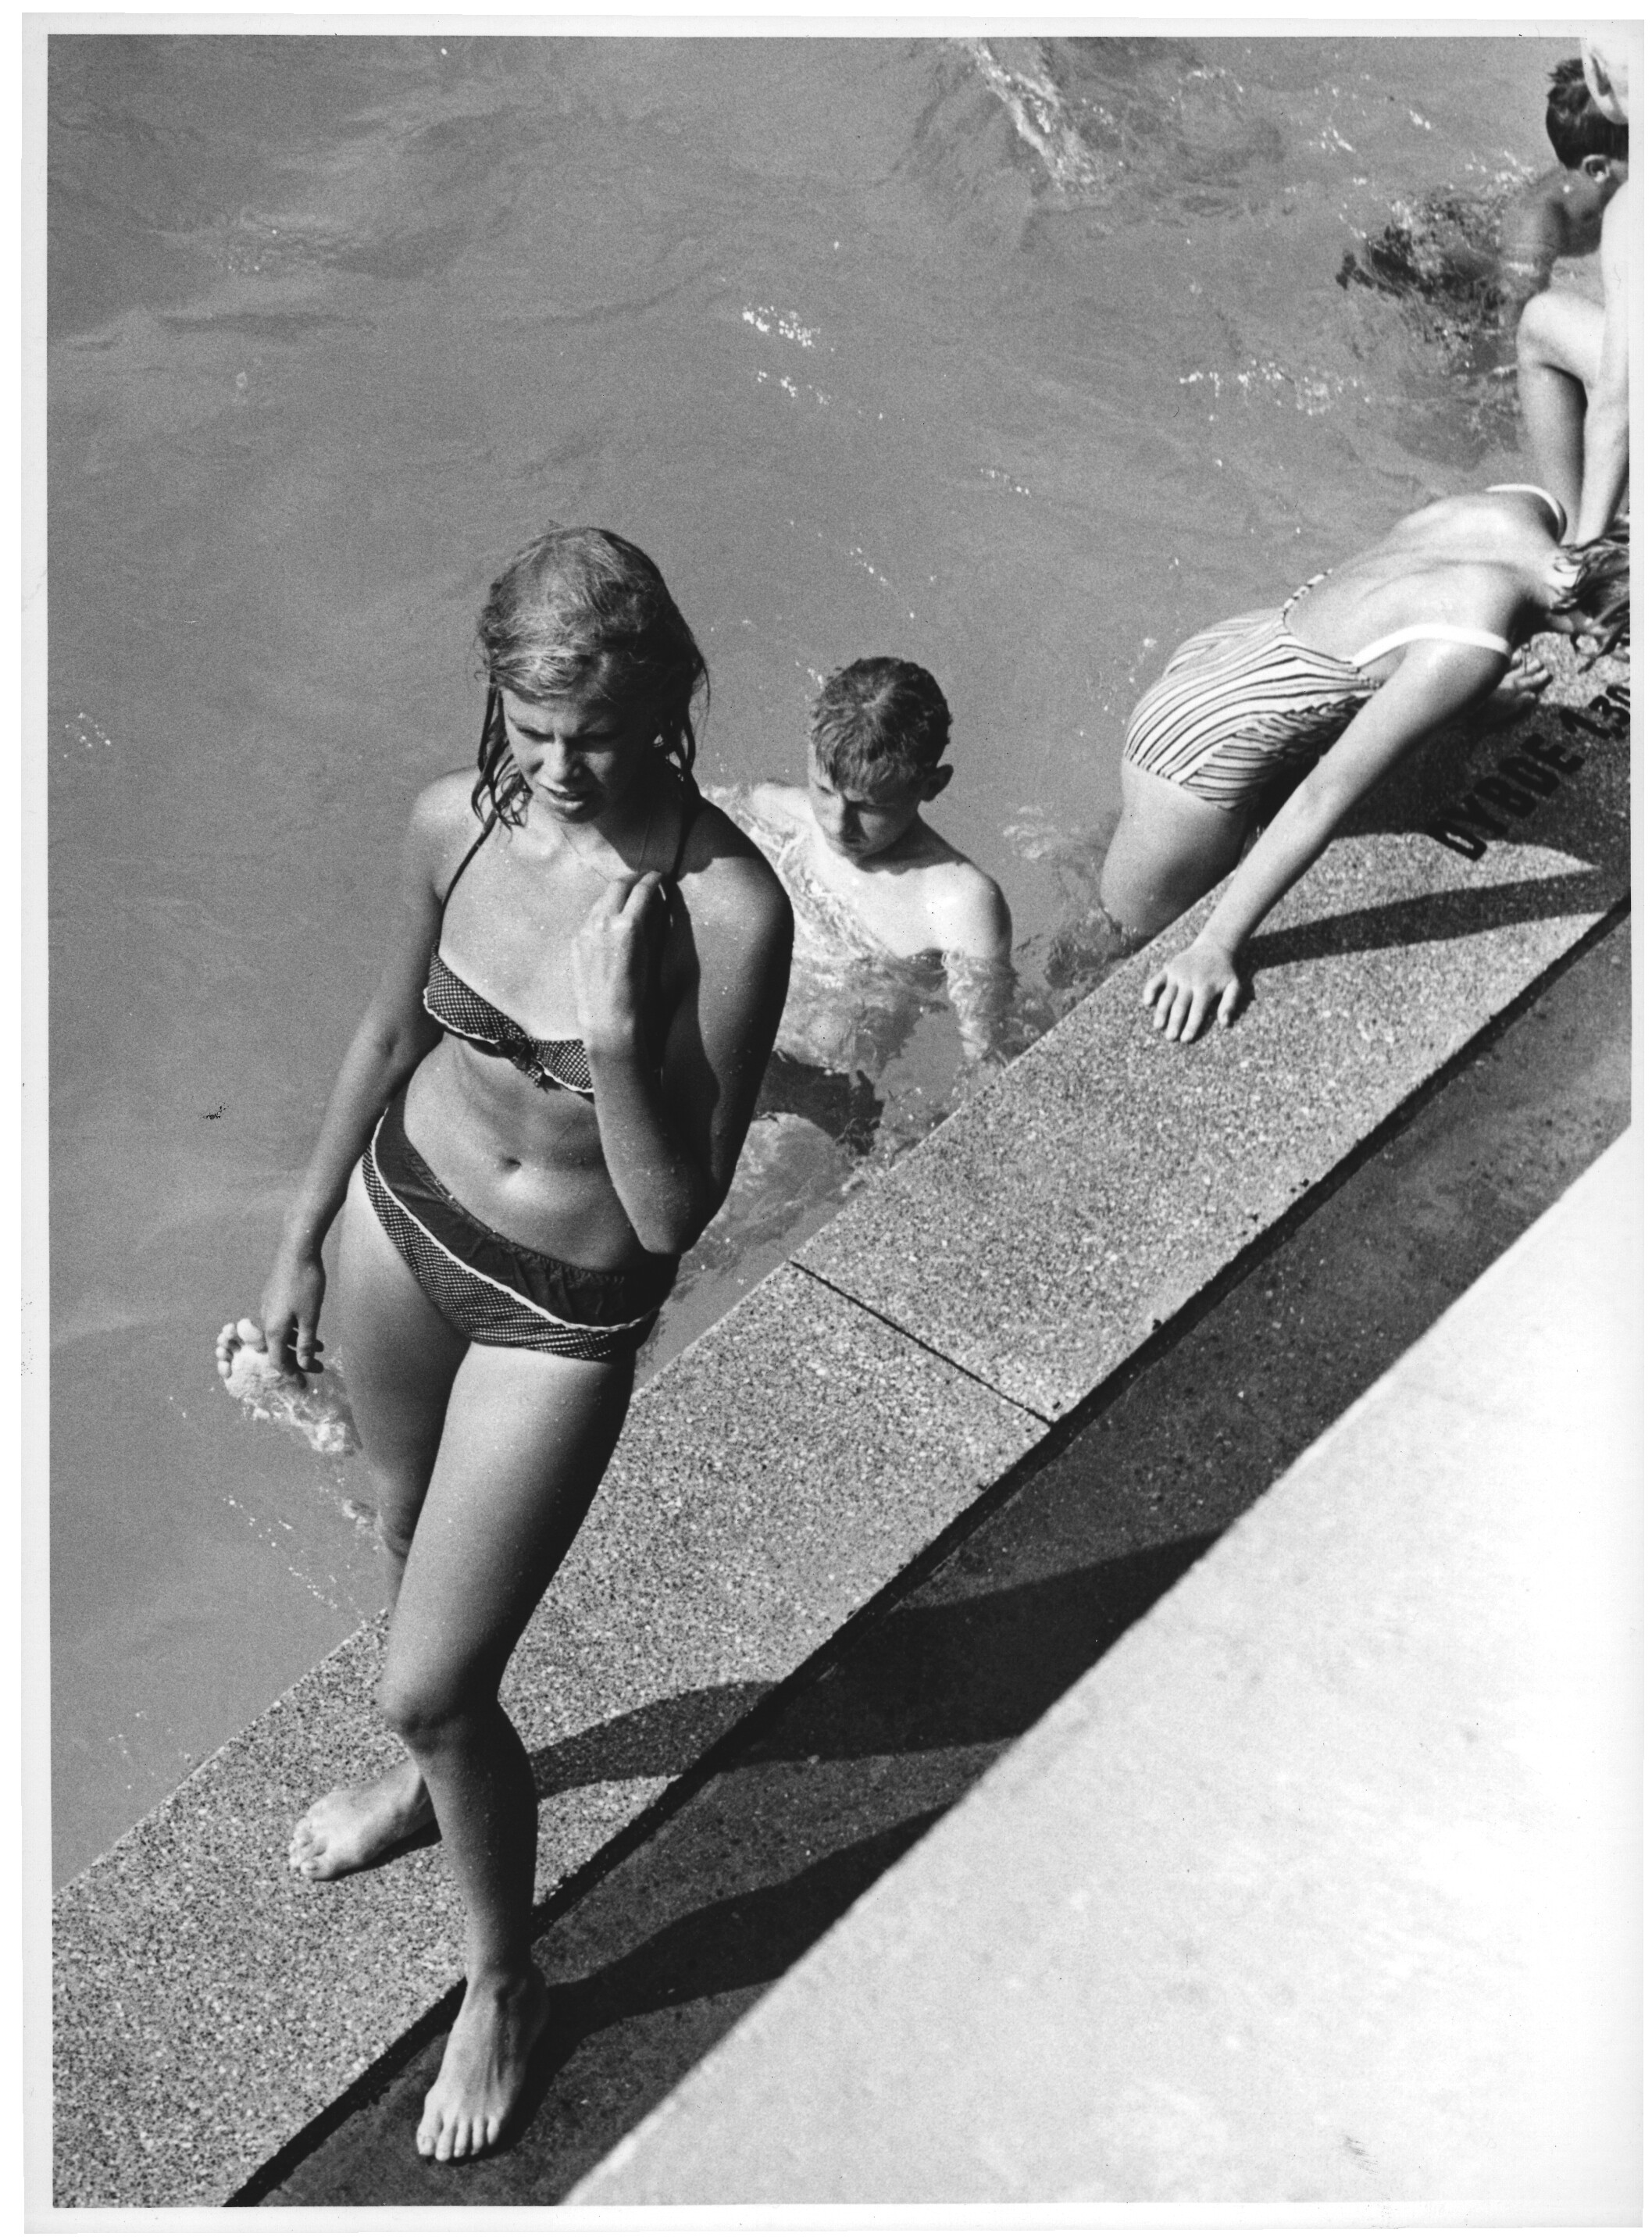 Летний отдых у бассейна. Фрогнербадет, 1963. Фотограф Пауль Андреас Рёстад